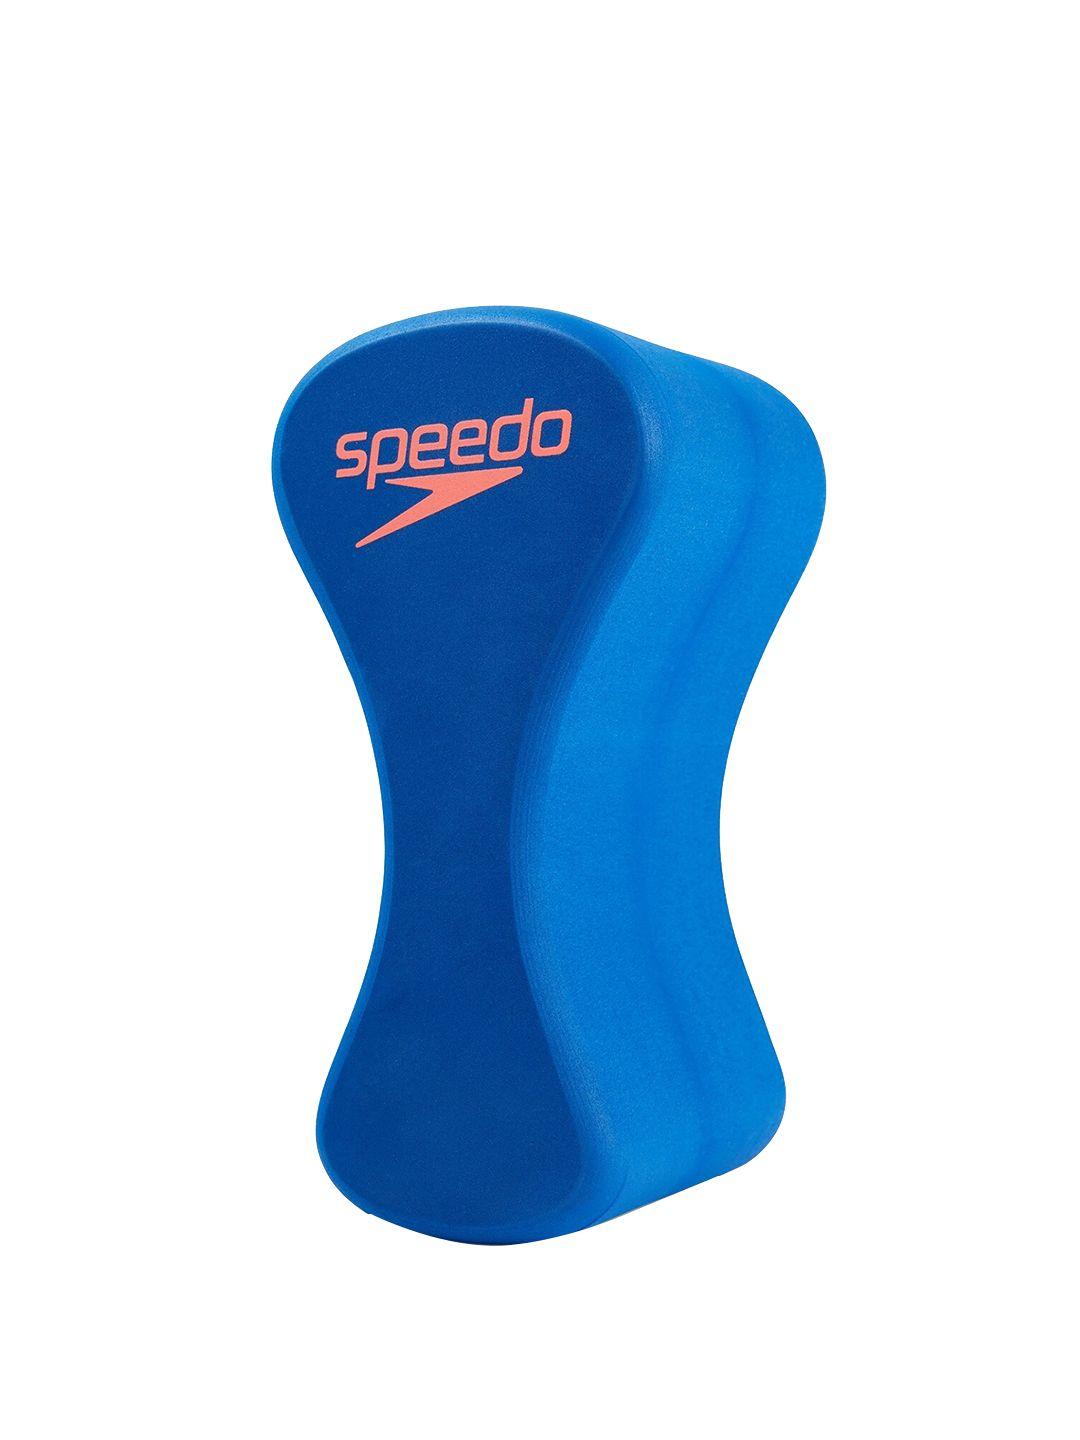 speedo elite pullbuoy swimming  inflatable